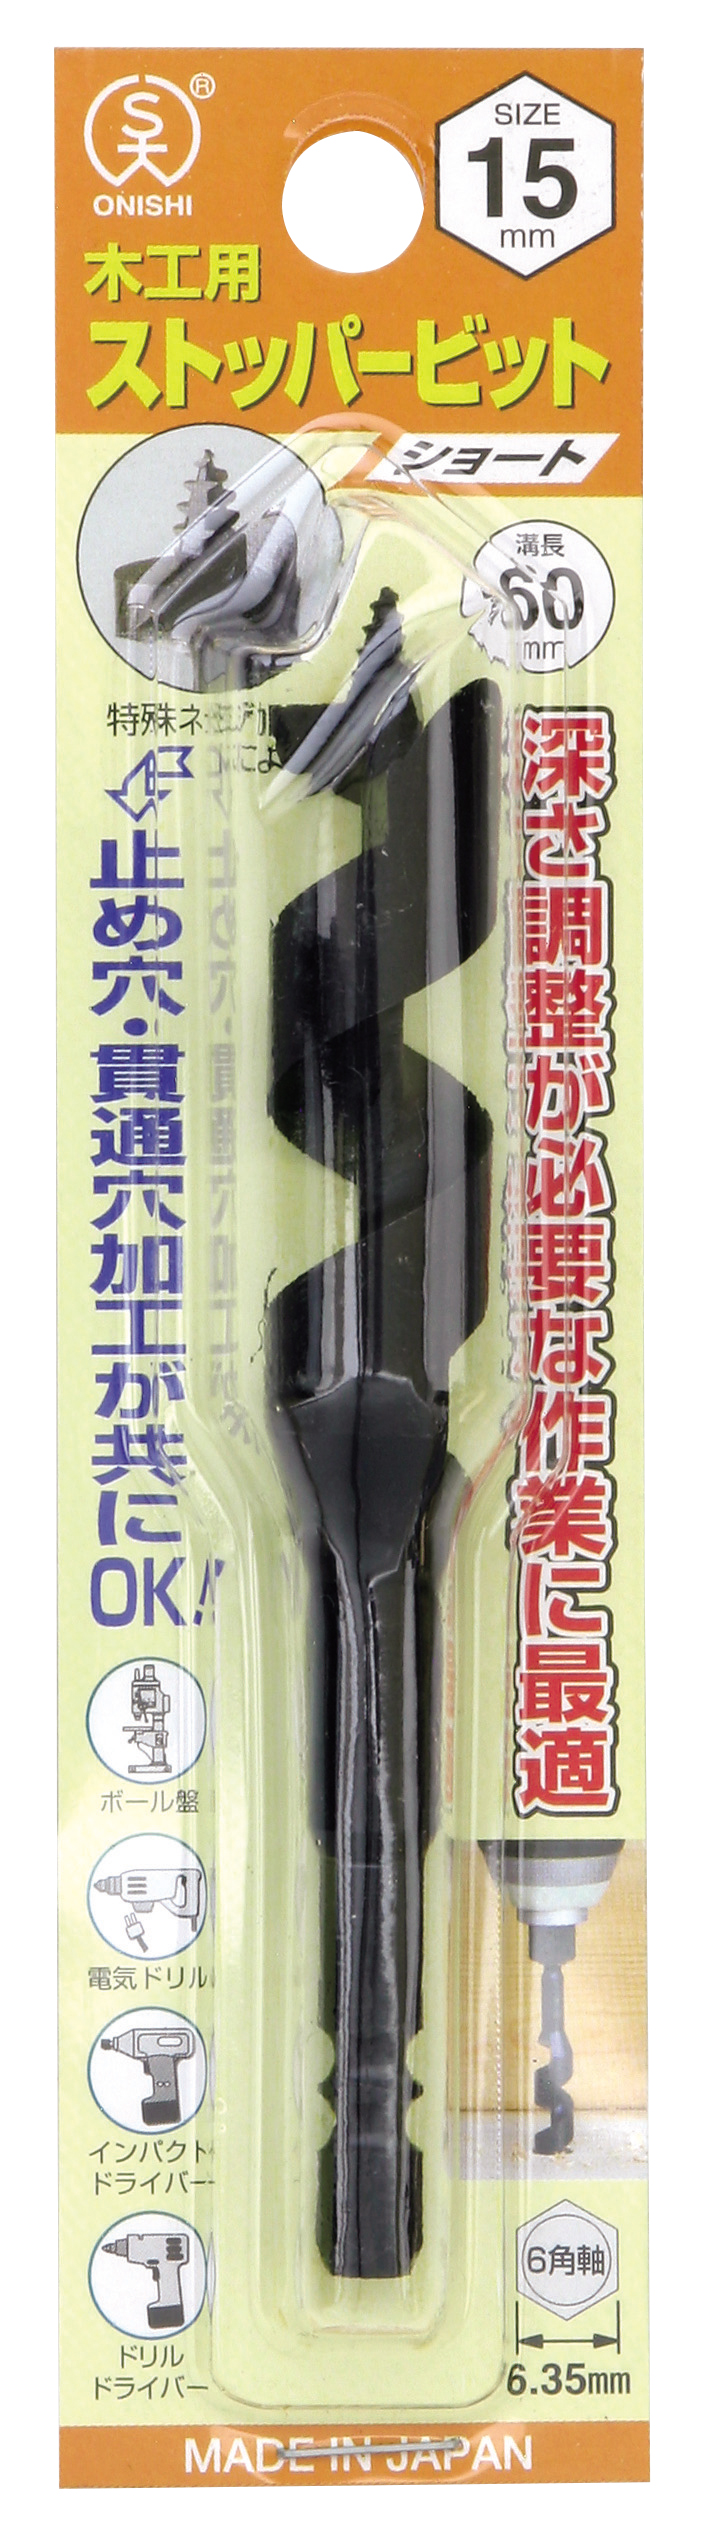 ニチアス 厚手ラギング用ガラスクロスチューブ (インサルテックス(R)) φ10mm 3-2466-01 - 3